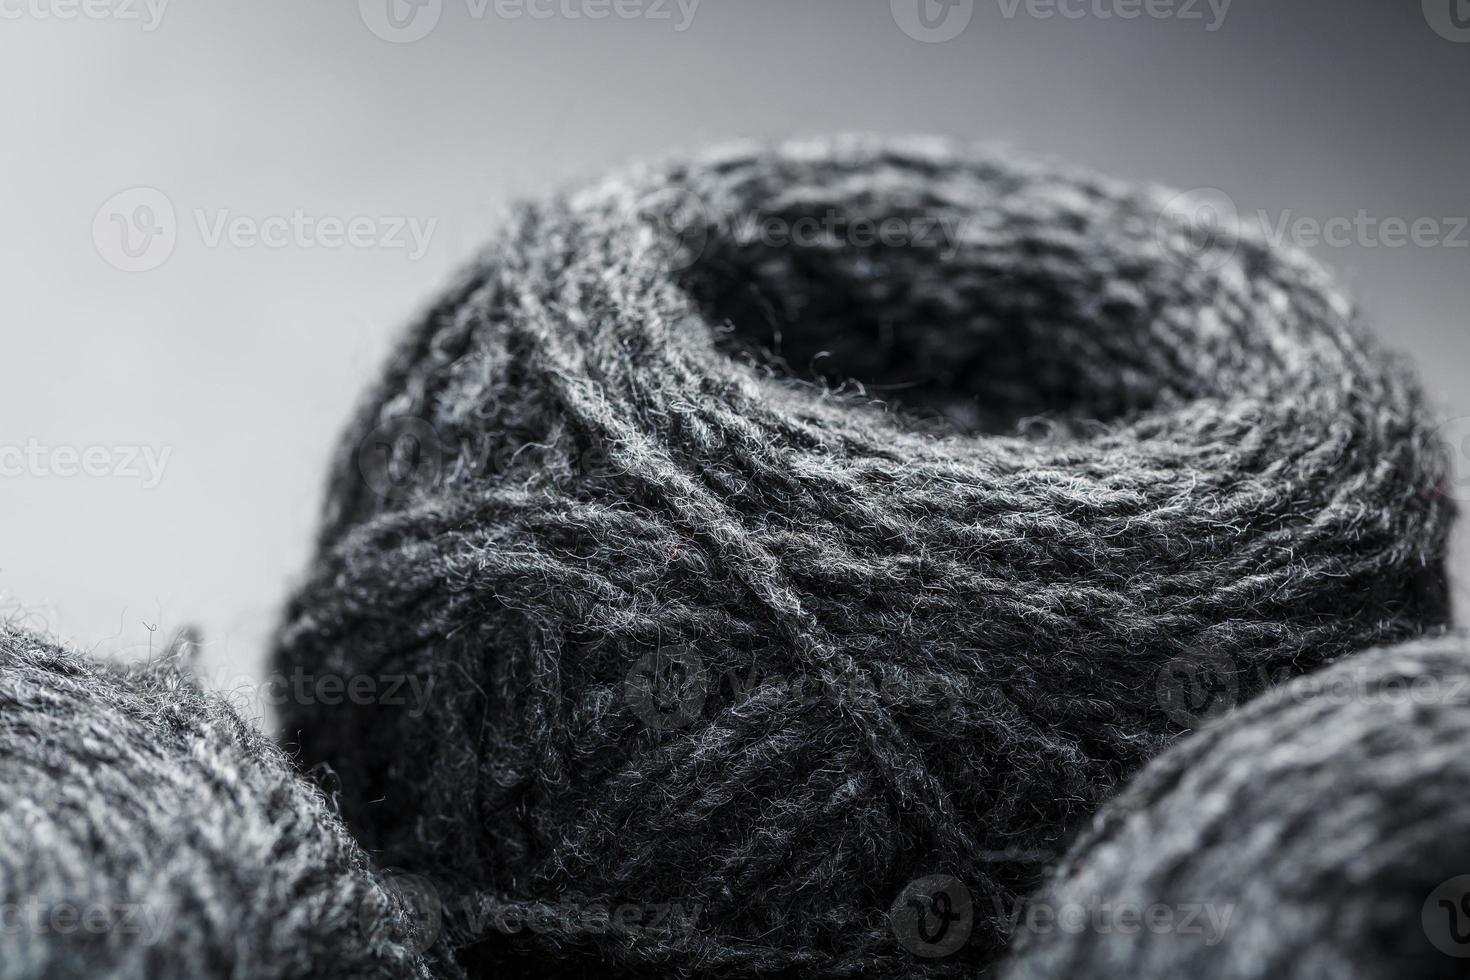 klitten van grijs garen gemaakt van natuurlijk wol detailopname foto